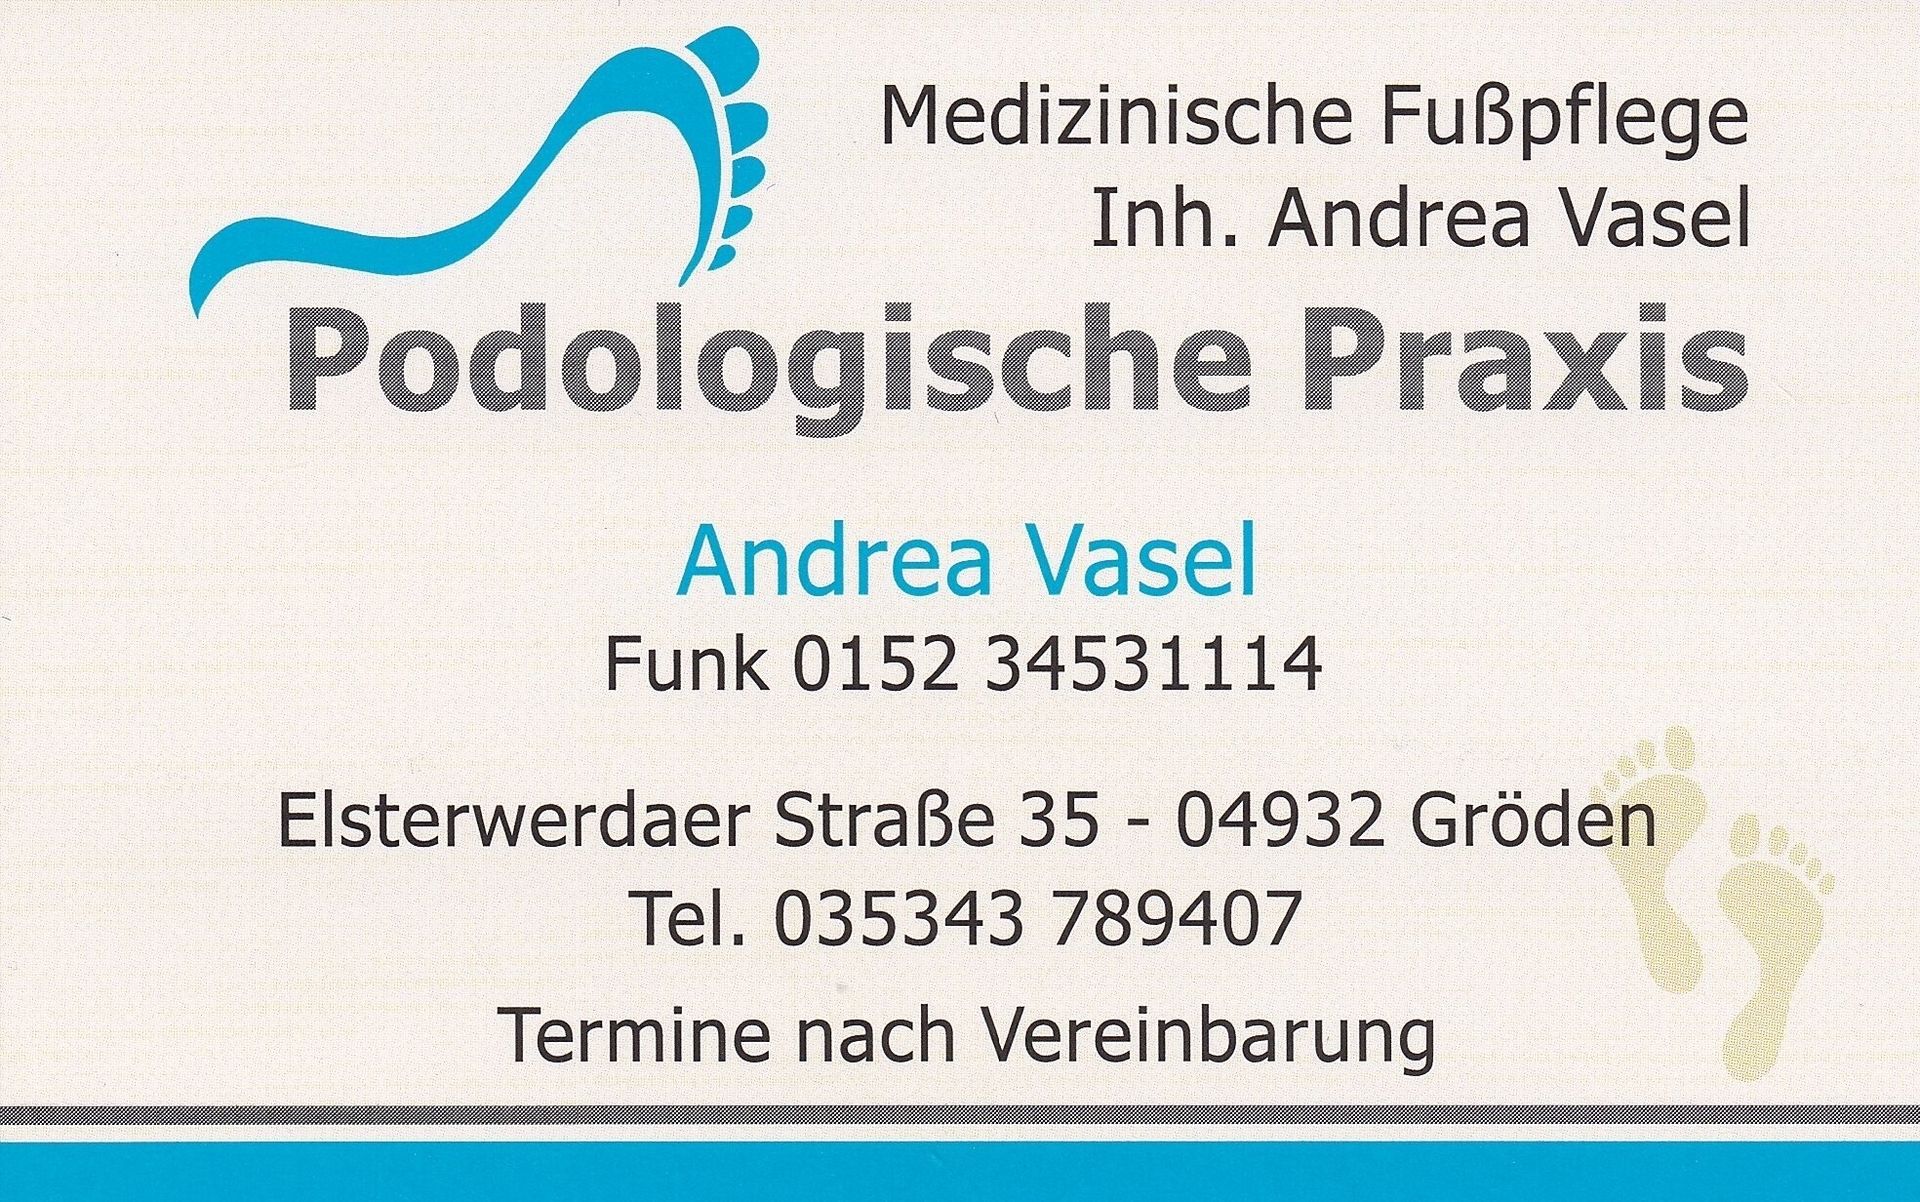 Amt Schradenland - Medizinische Fußpflege - Podologische Praxis - Kosmetik  - Massage